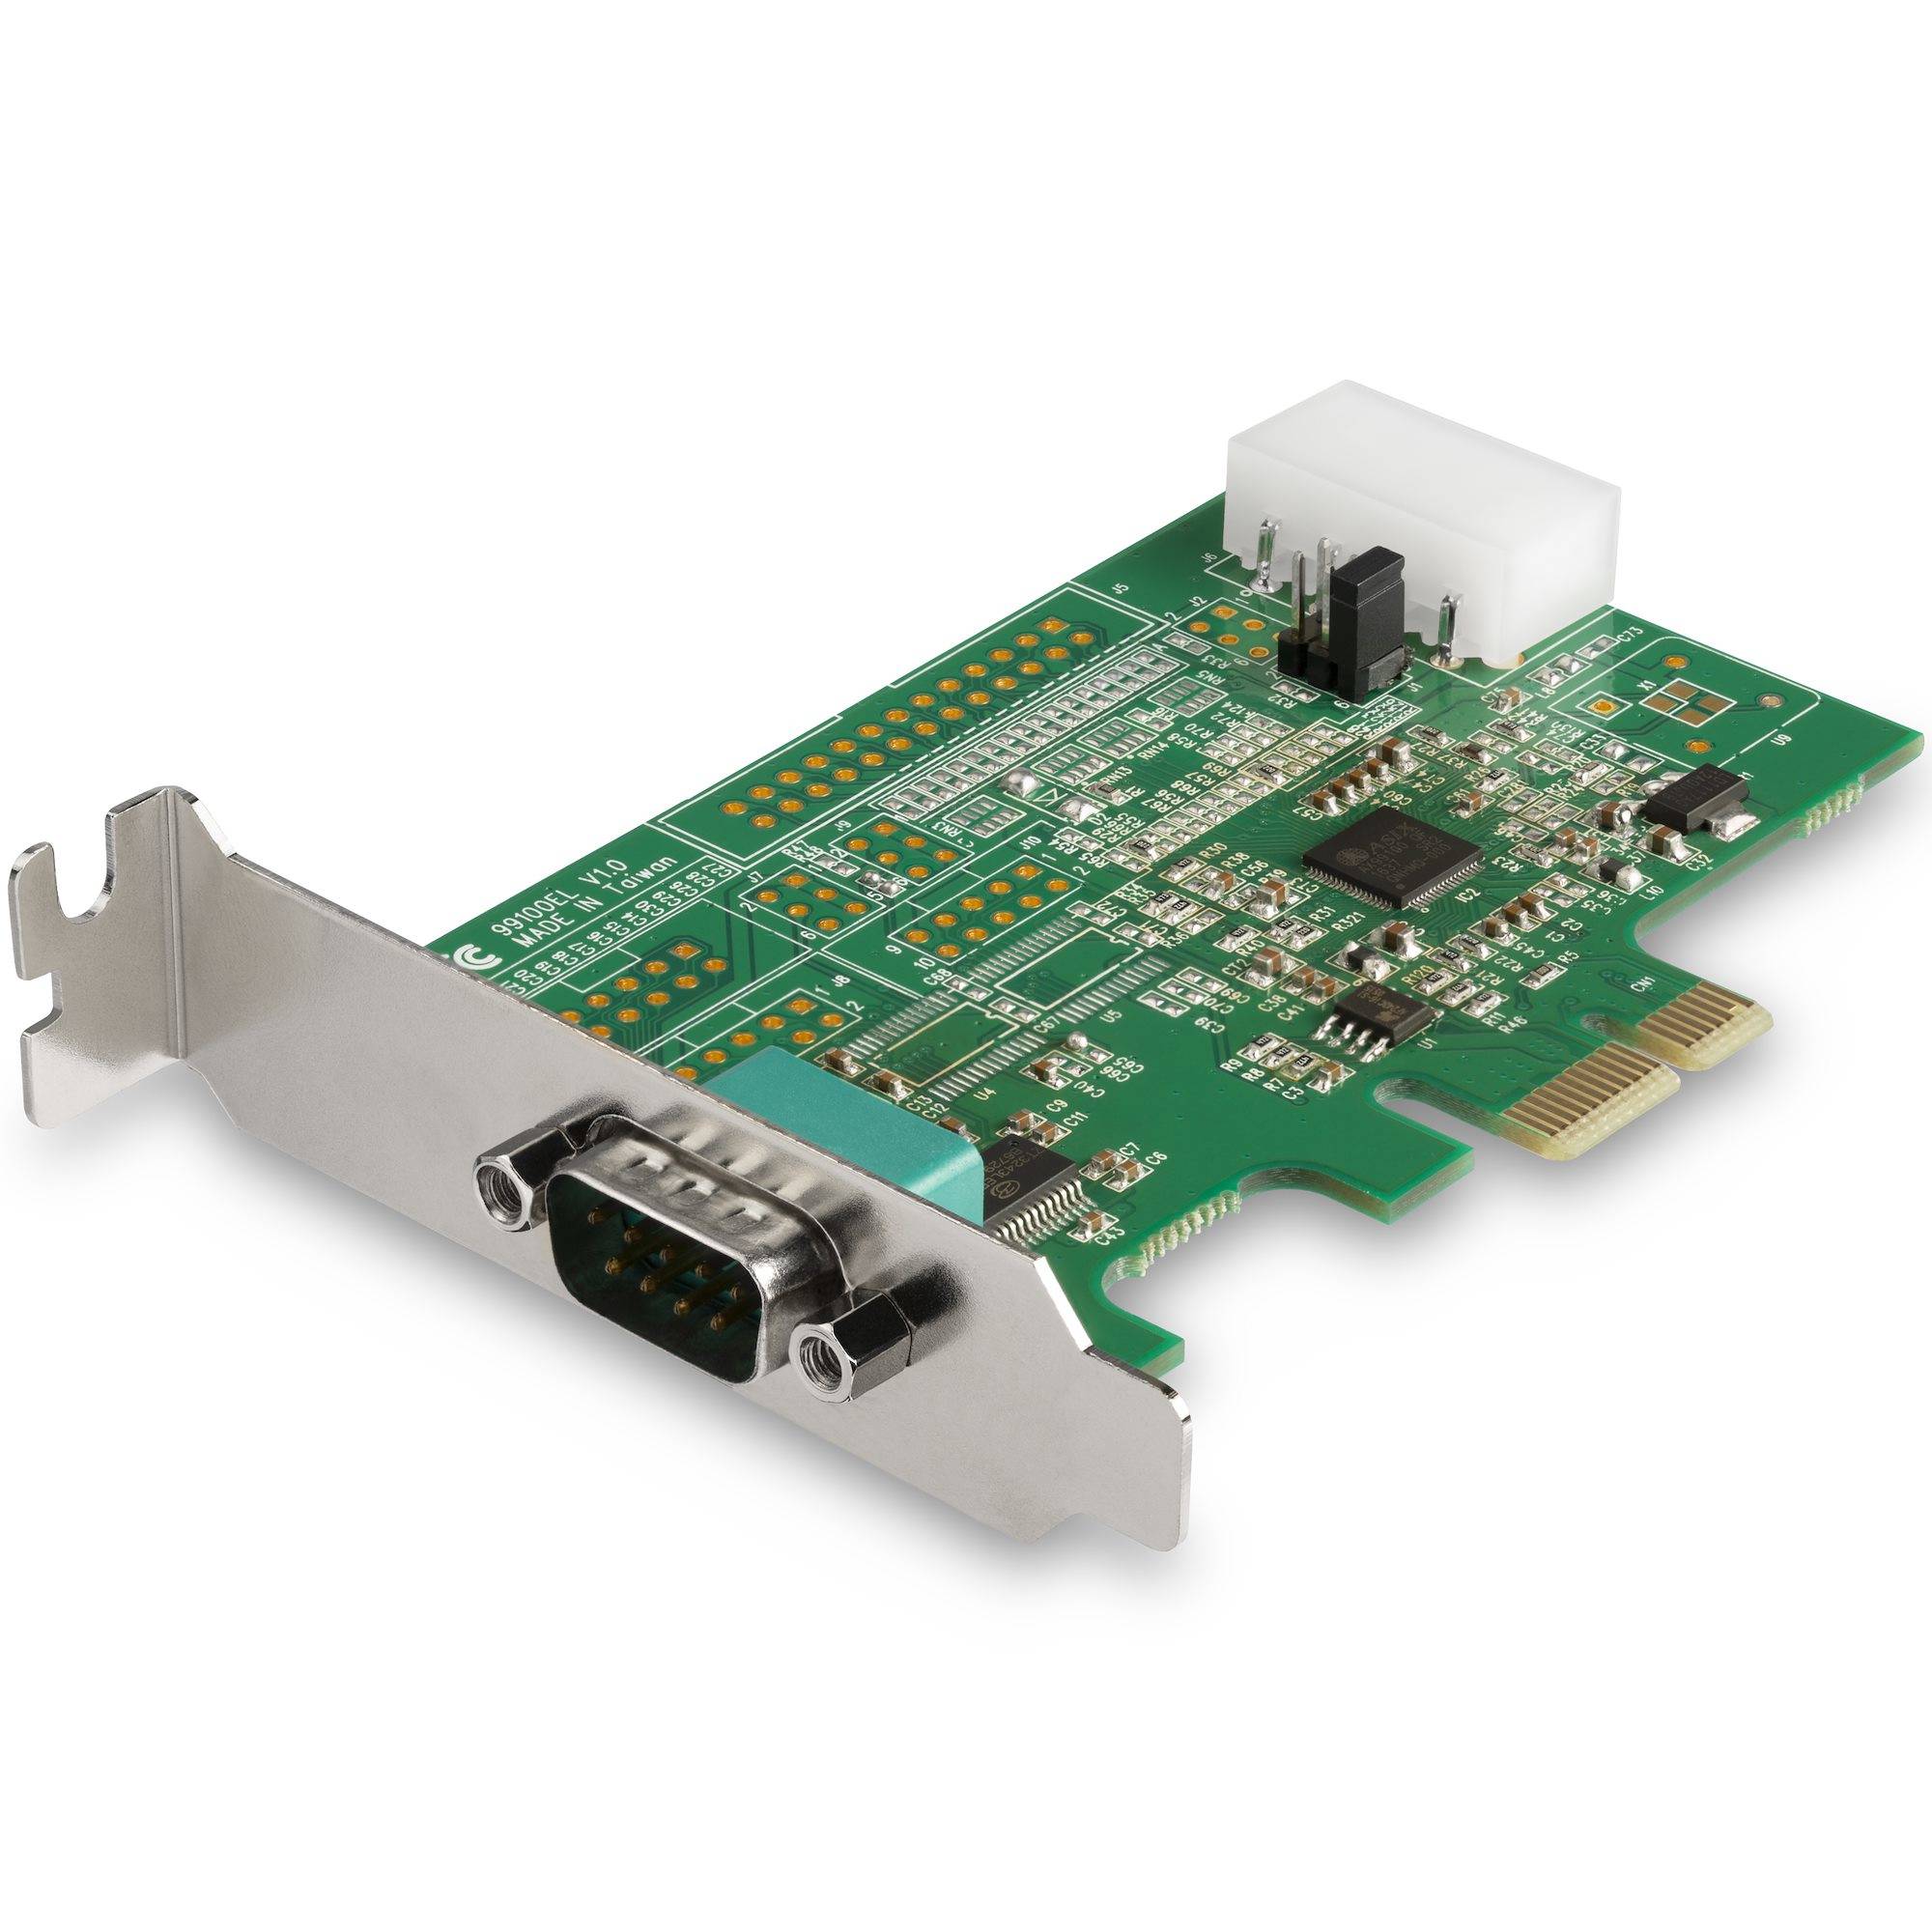 Rca Informatique - Image du produit : 1PORT RS232 SERIAL PORT PCI EXPRESS CARD - 16950 UART